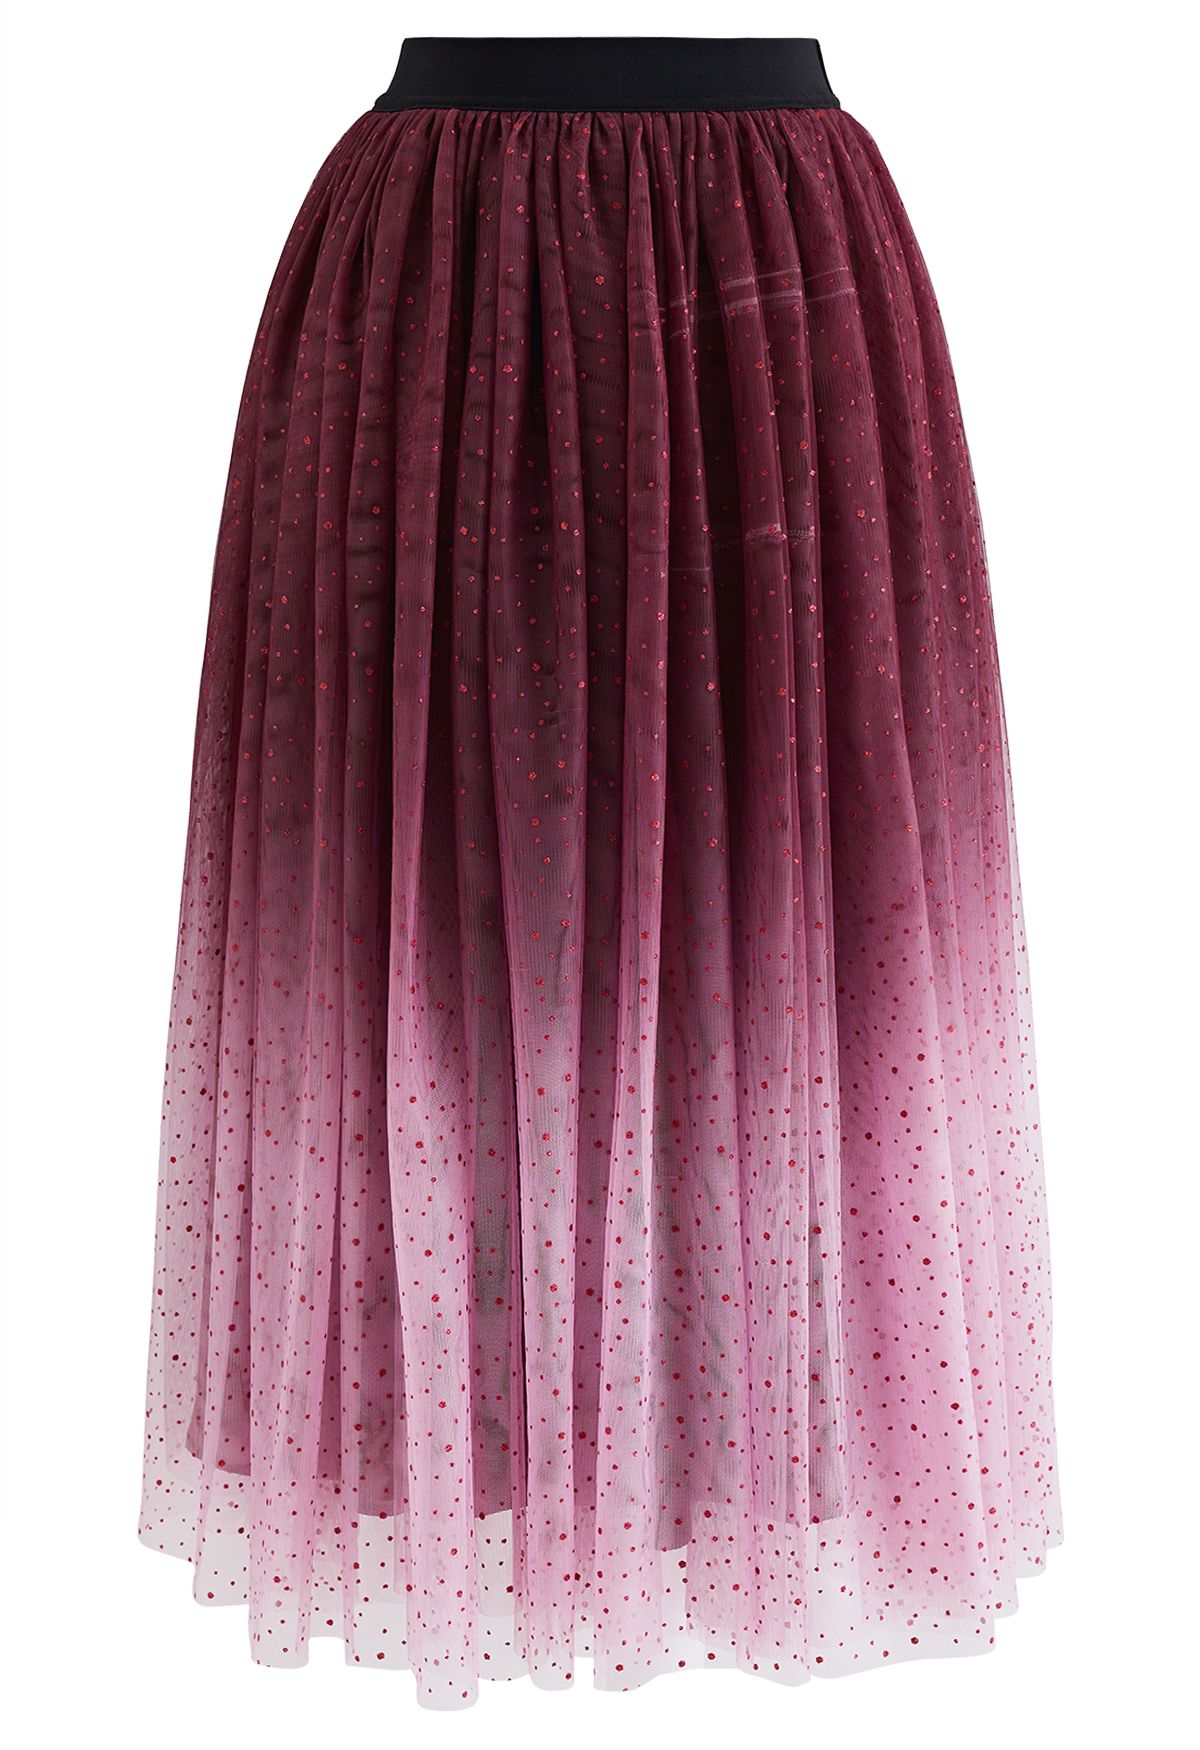 Festive Sparkle Ombre Tulle Midi Skirt in Burgundy